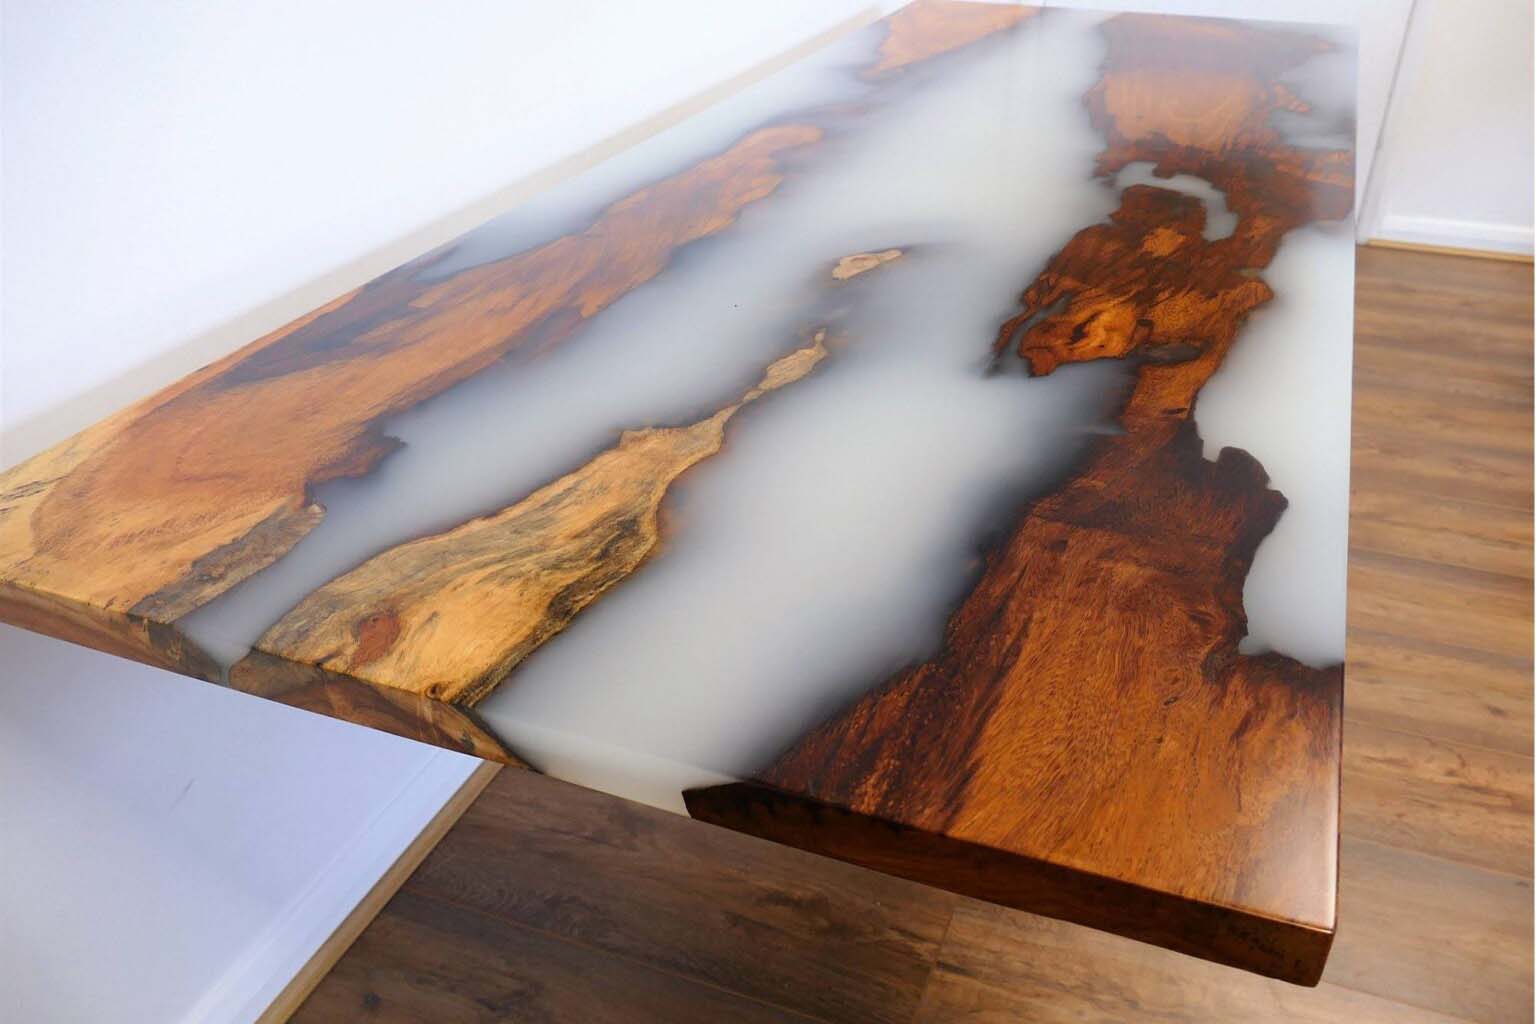 Comment fabriquer une table rivière epoxy à moindre coût ? - Déconome